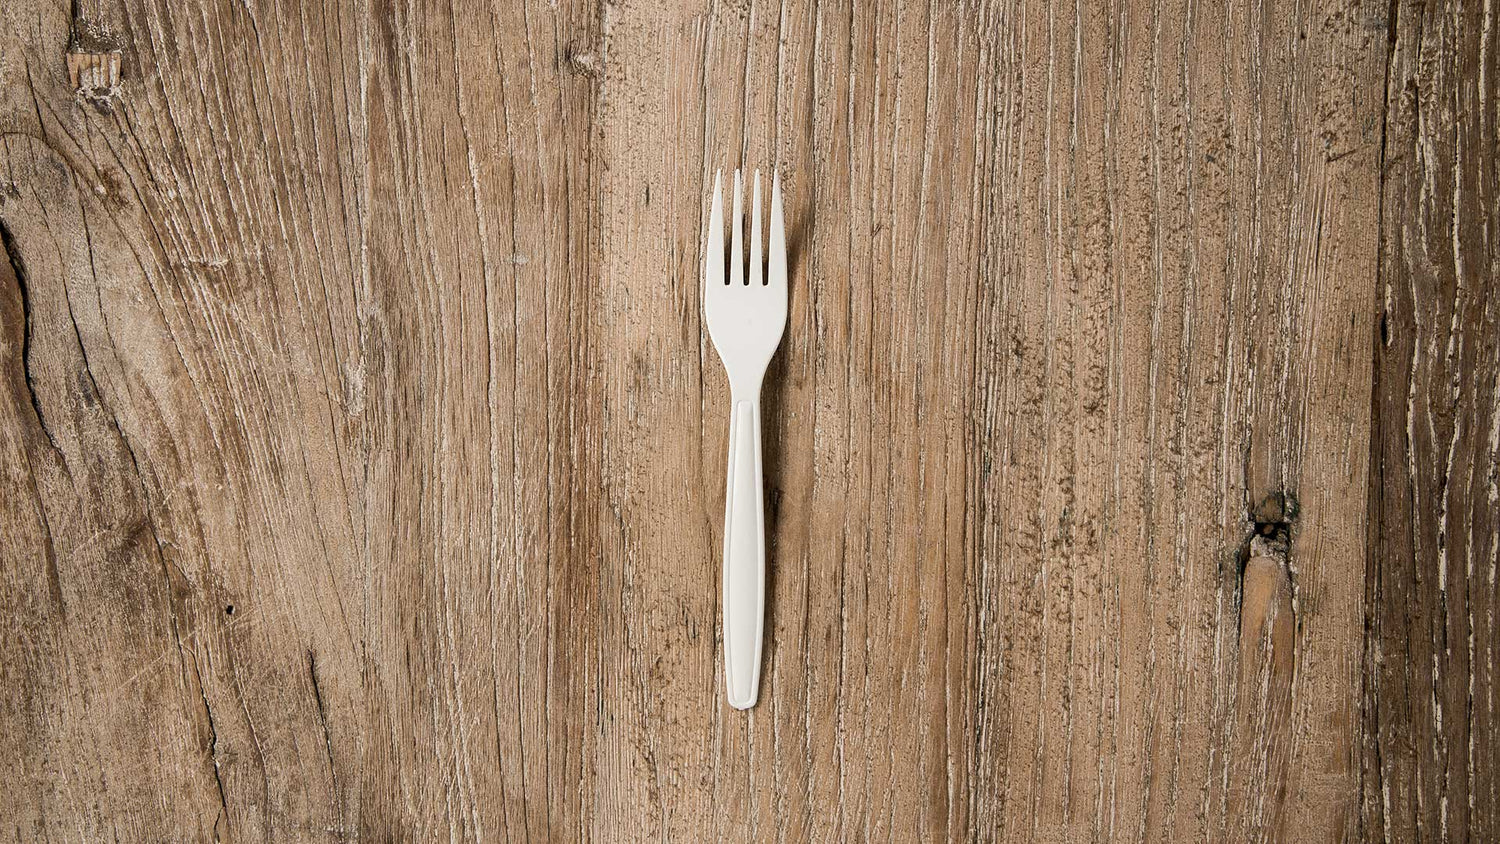 posate monouso biodegradabili compostabili forchette coltelli cucchiai cucchiaini dessert forchettine eco bio